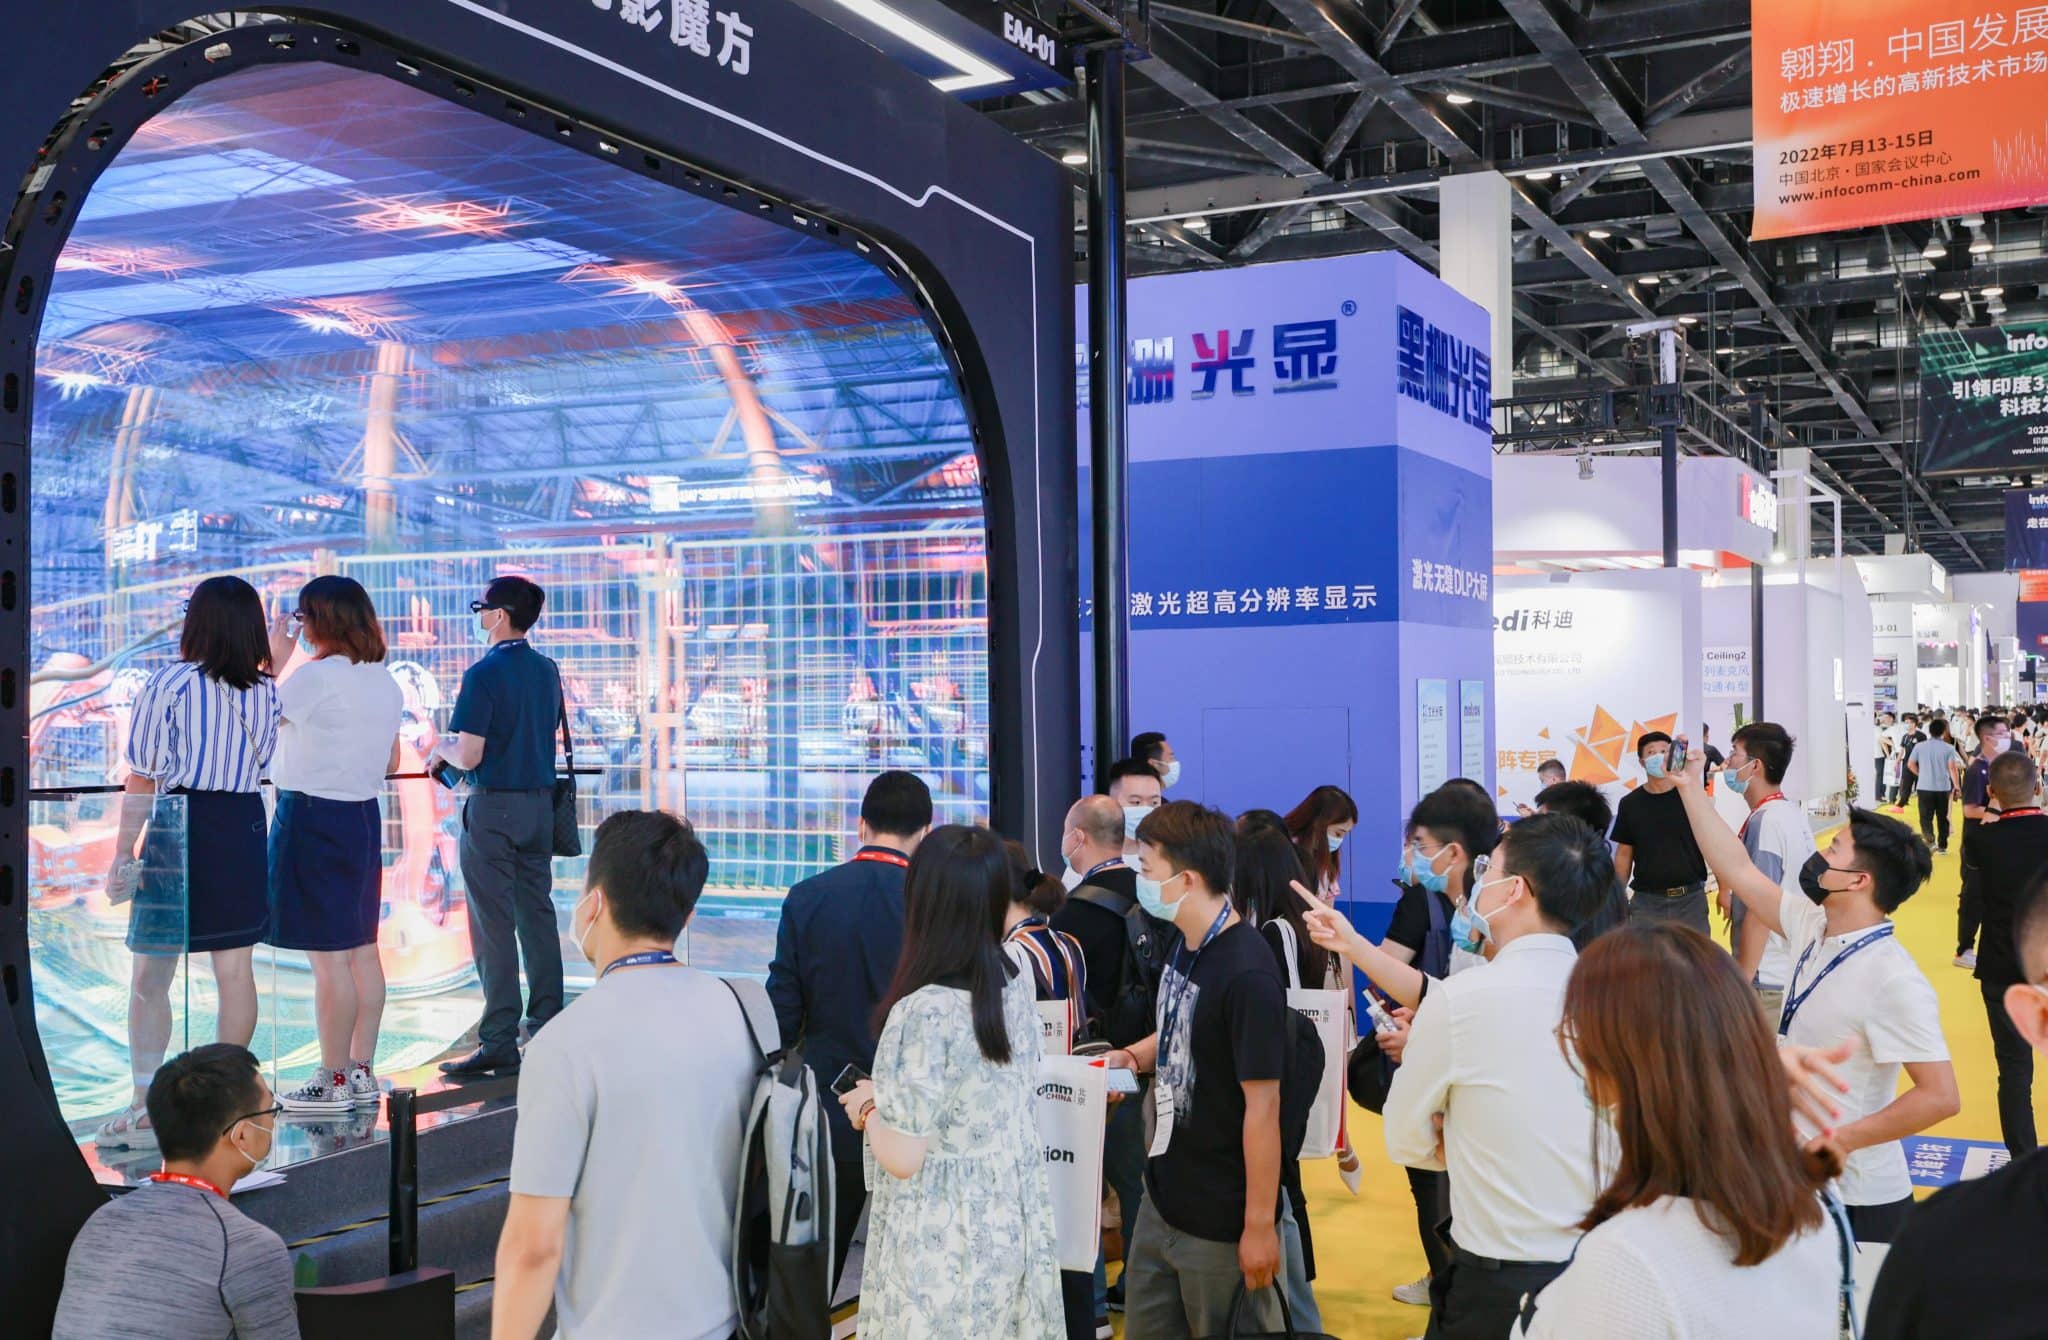 北京InfoComm China 2022 展示创新科技 驱动企业攀升新高度